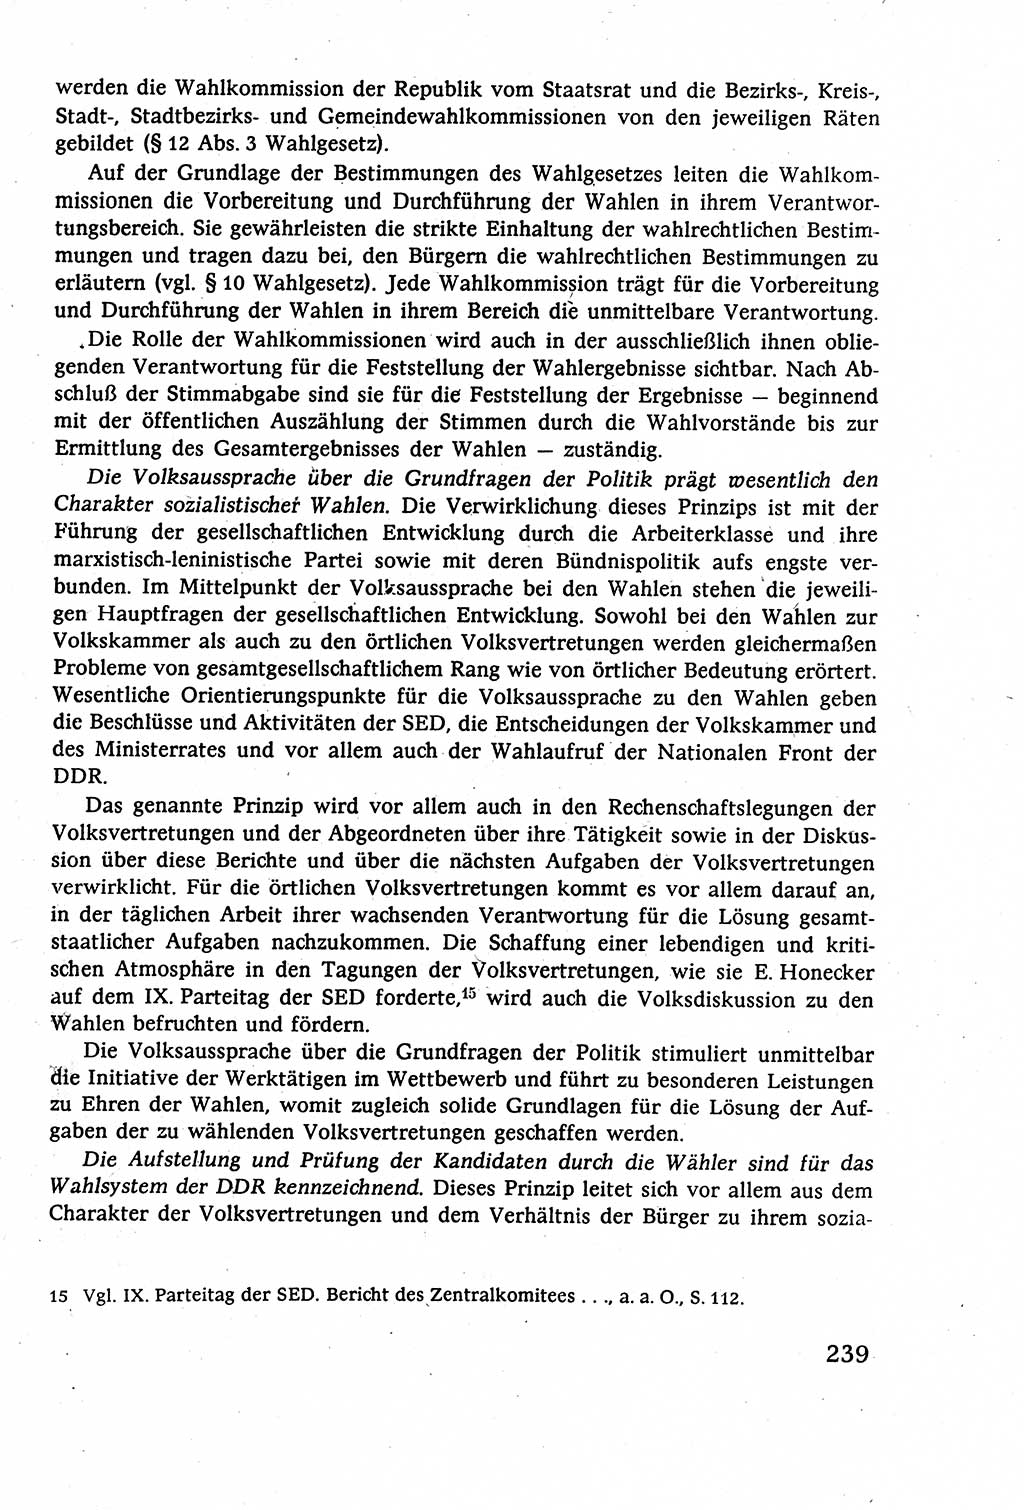 Staatsrecht der DDR (Deutsche Demokratische Republik), Lehrbuch 1977, Seite 239 (St.-R. DDR Lb. 1977, S. 239)